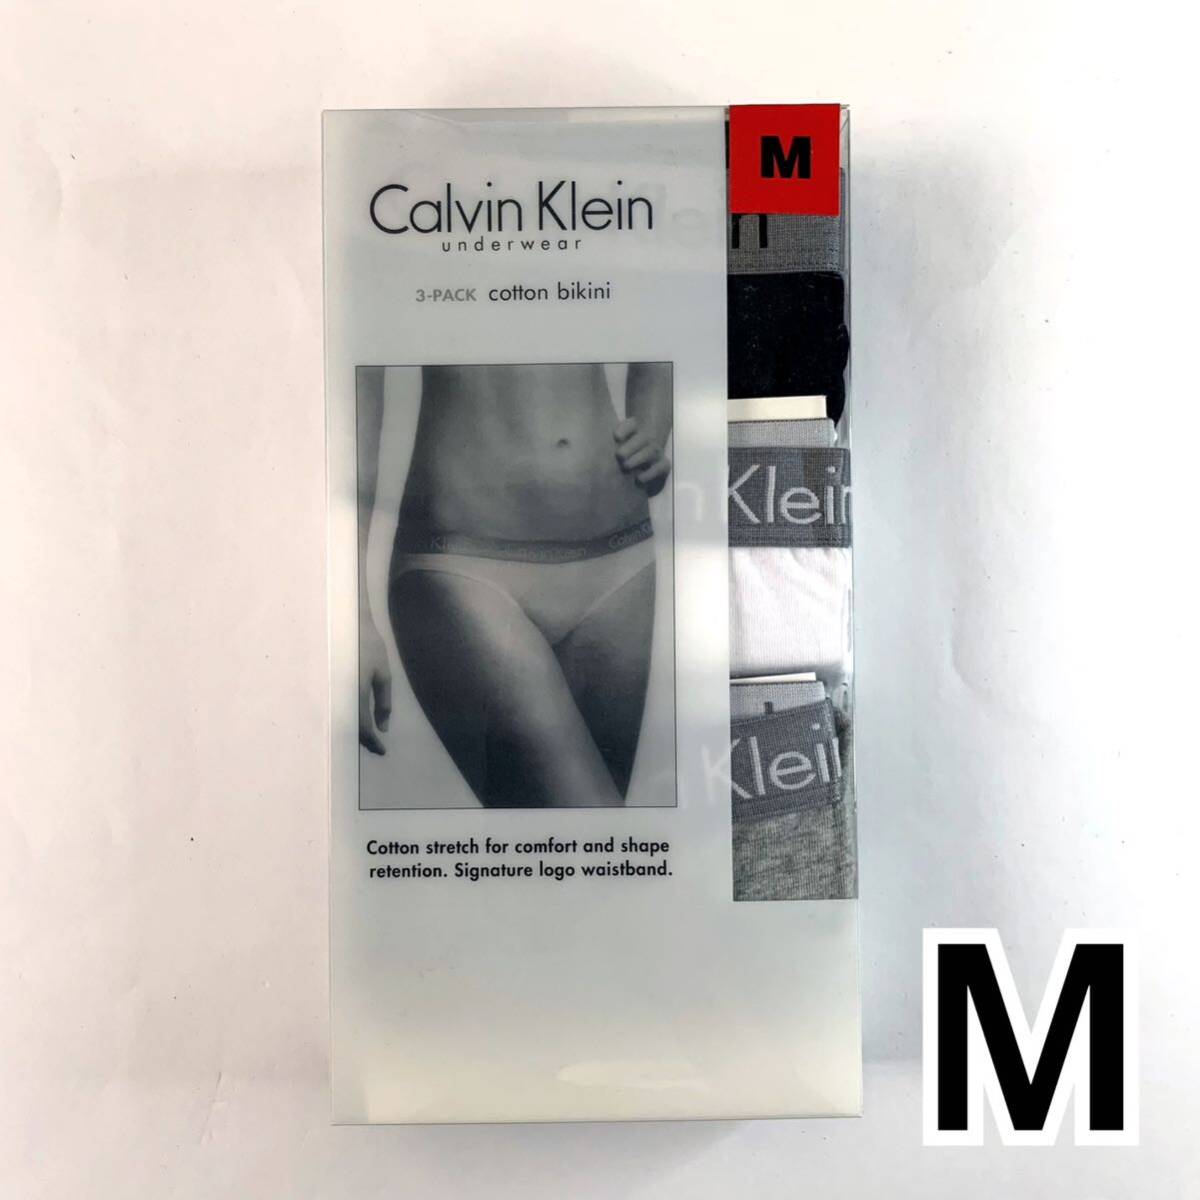 Calvin Klein アンダーウェア コットンビキニ Mサイズ 3枚セット レディース 送料無料 最短発送 下着 女性下着 ショーツ パンツ パンティーの画像1